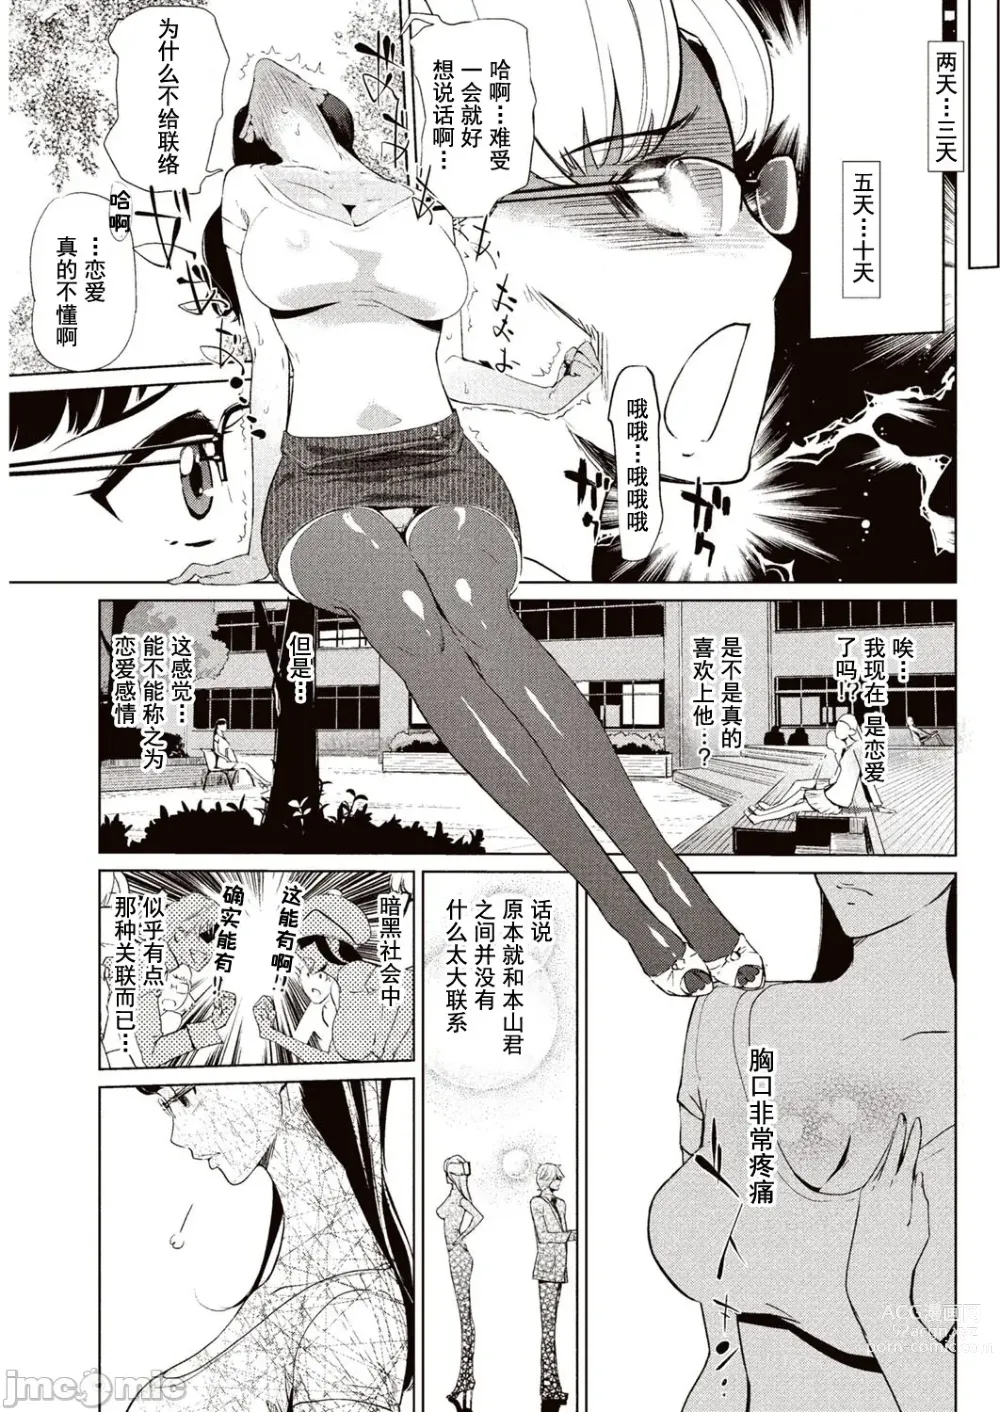 Page 24 of manga 賣作社團的招待券